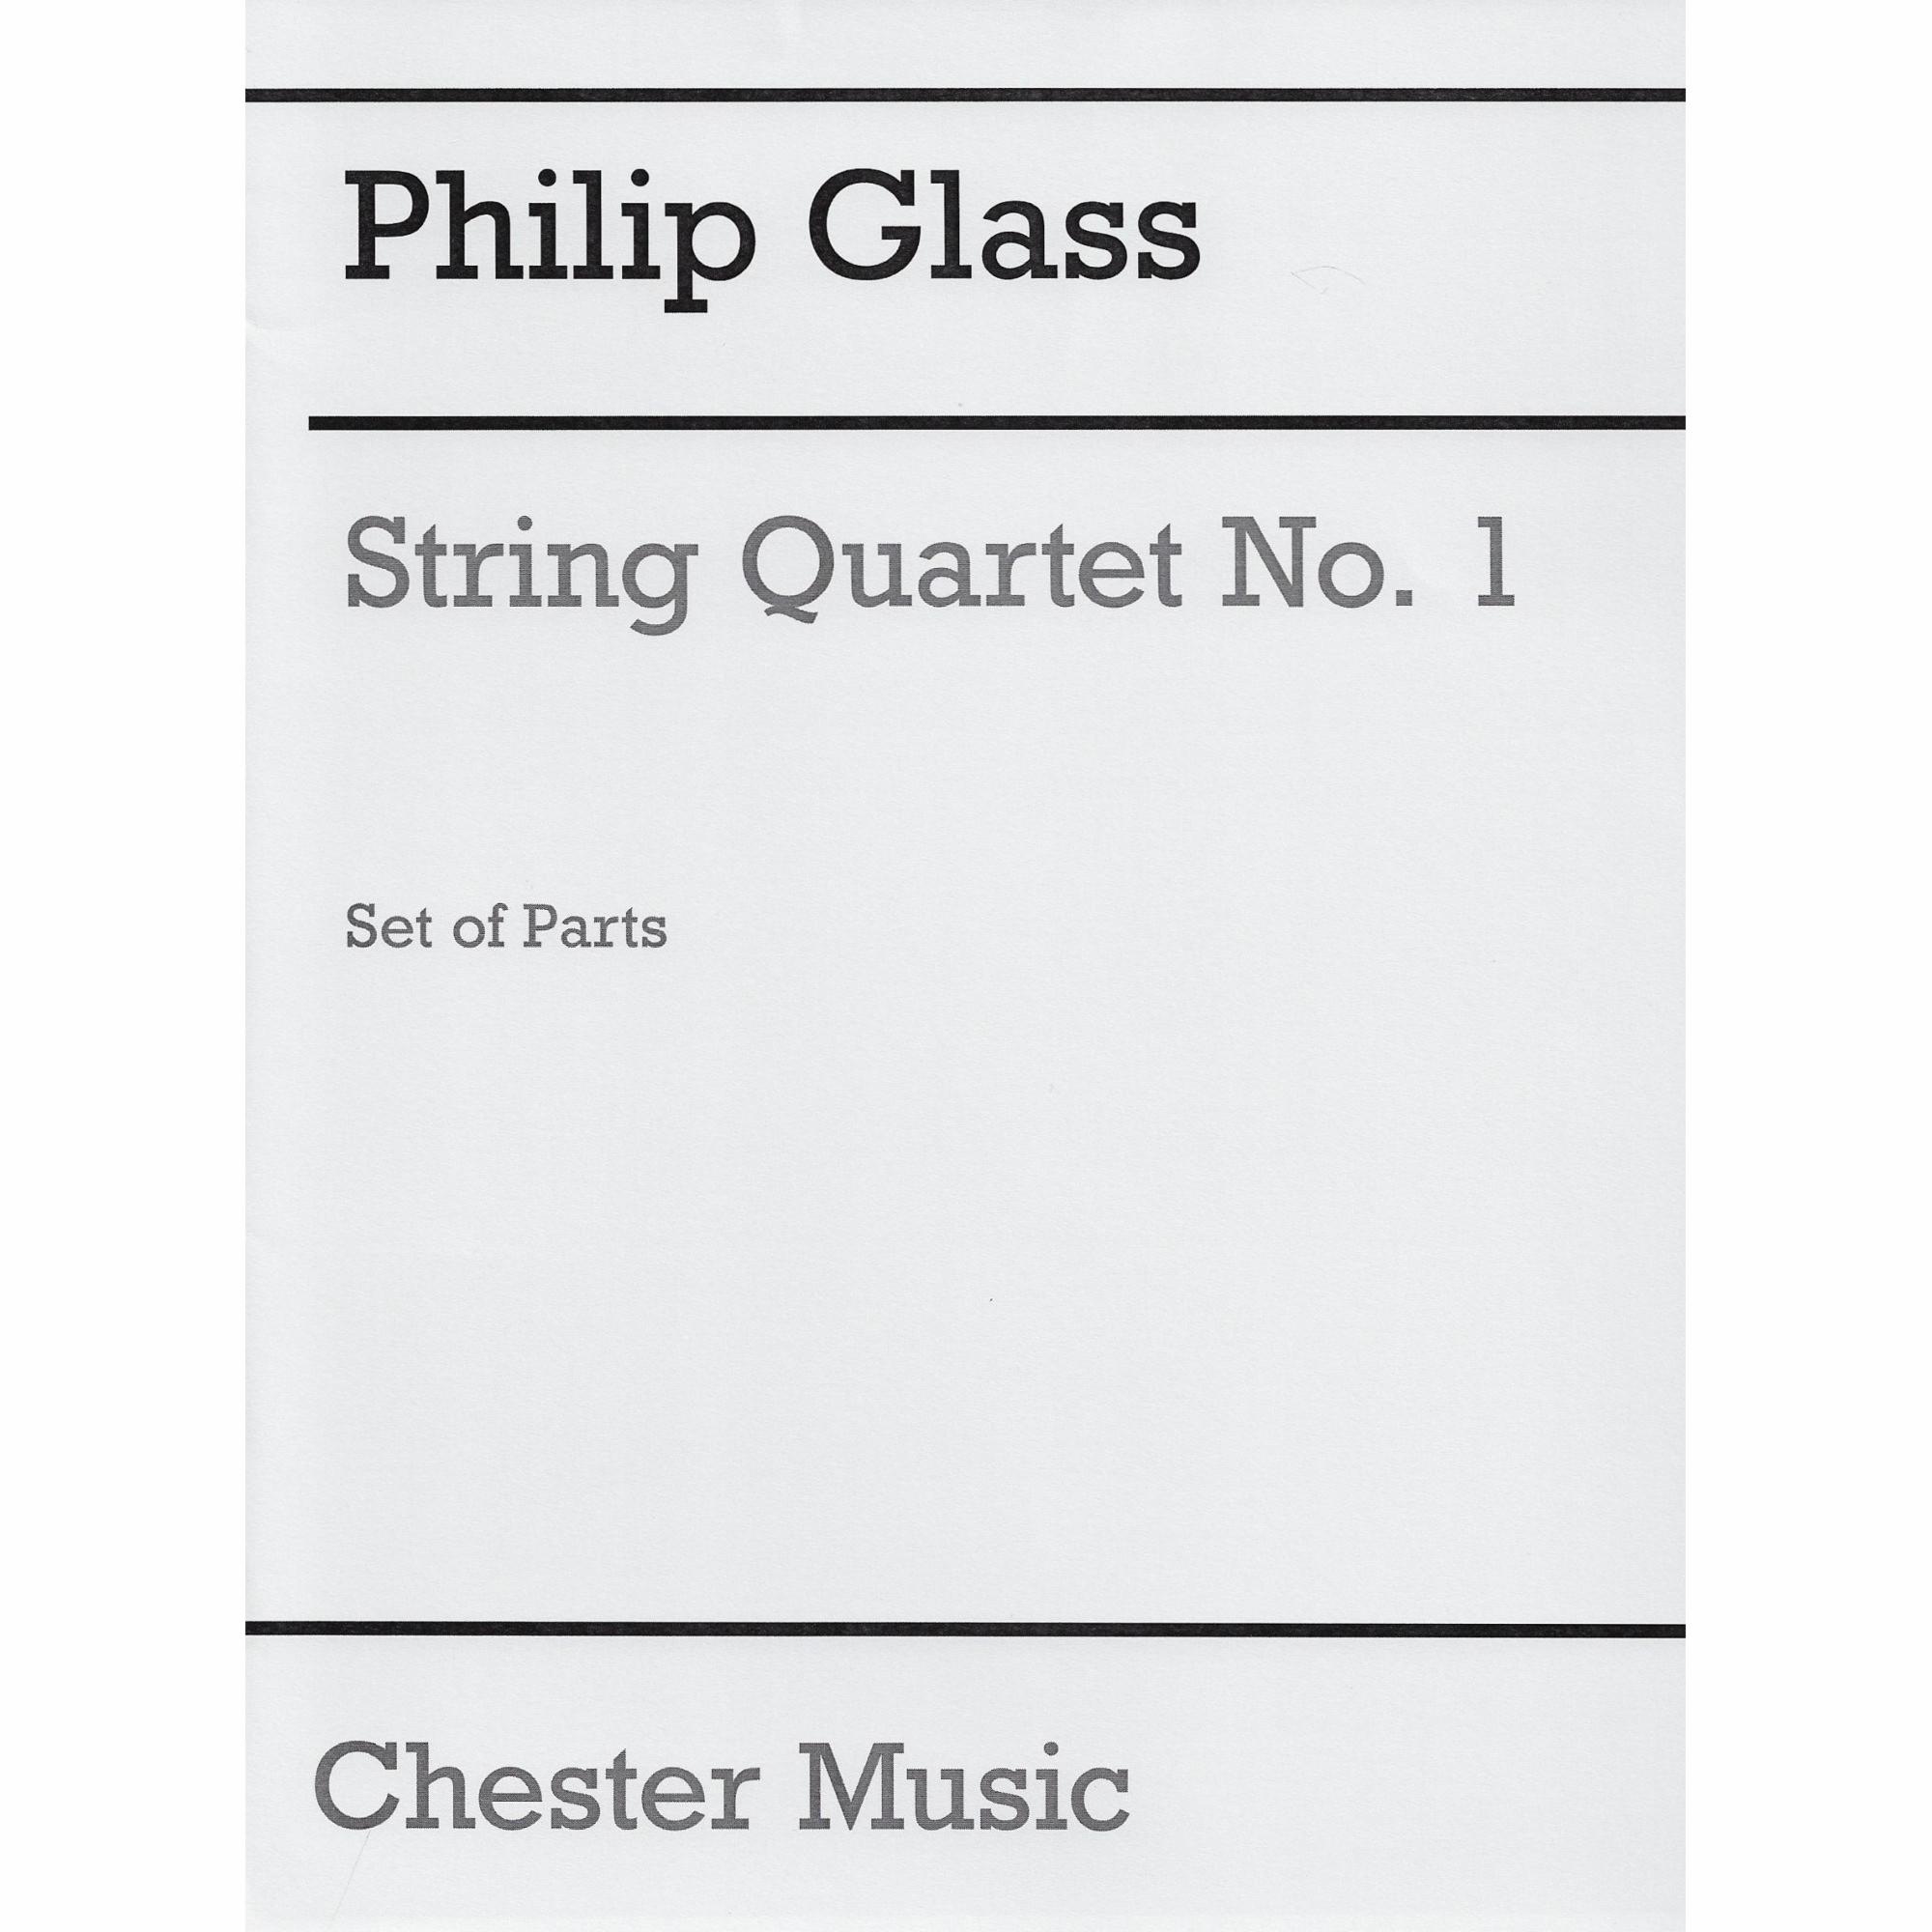 Glass -- String Quartet No. 1